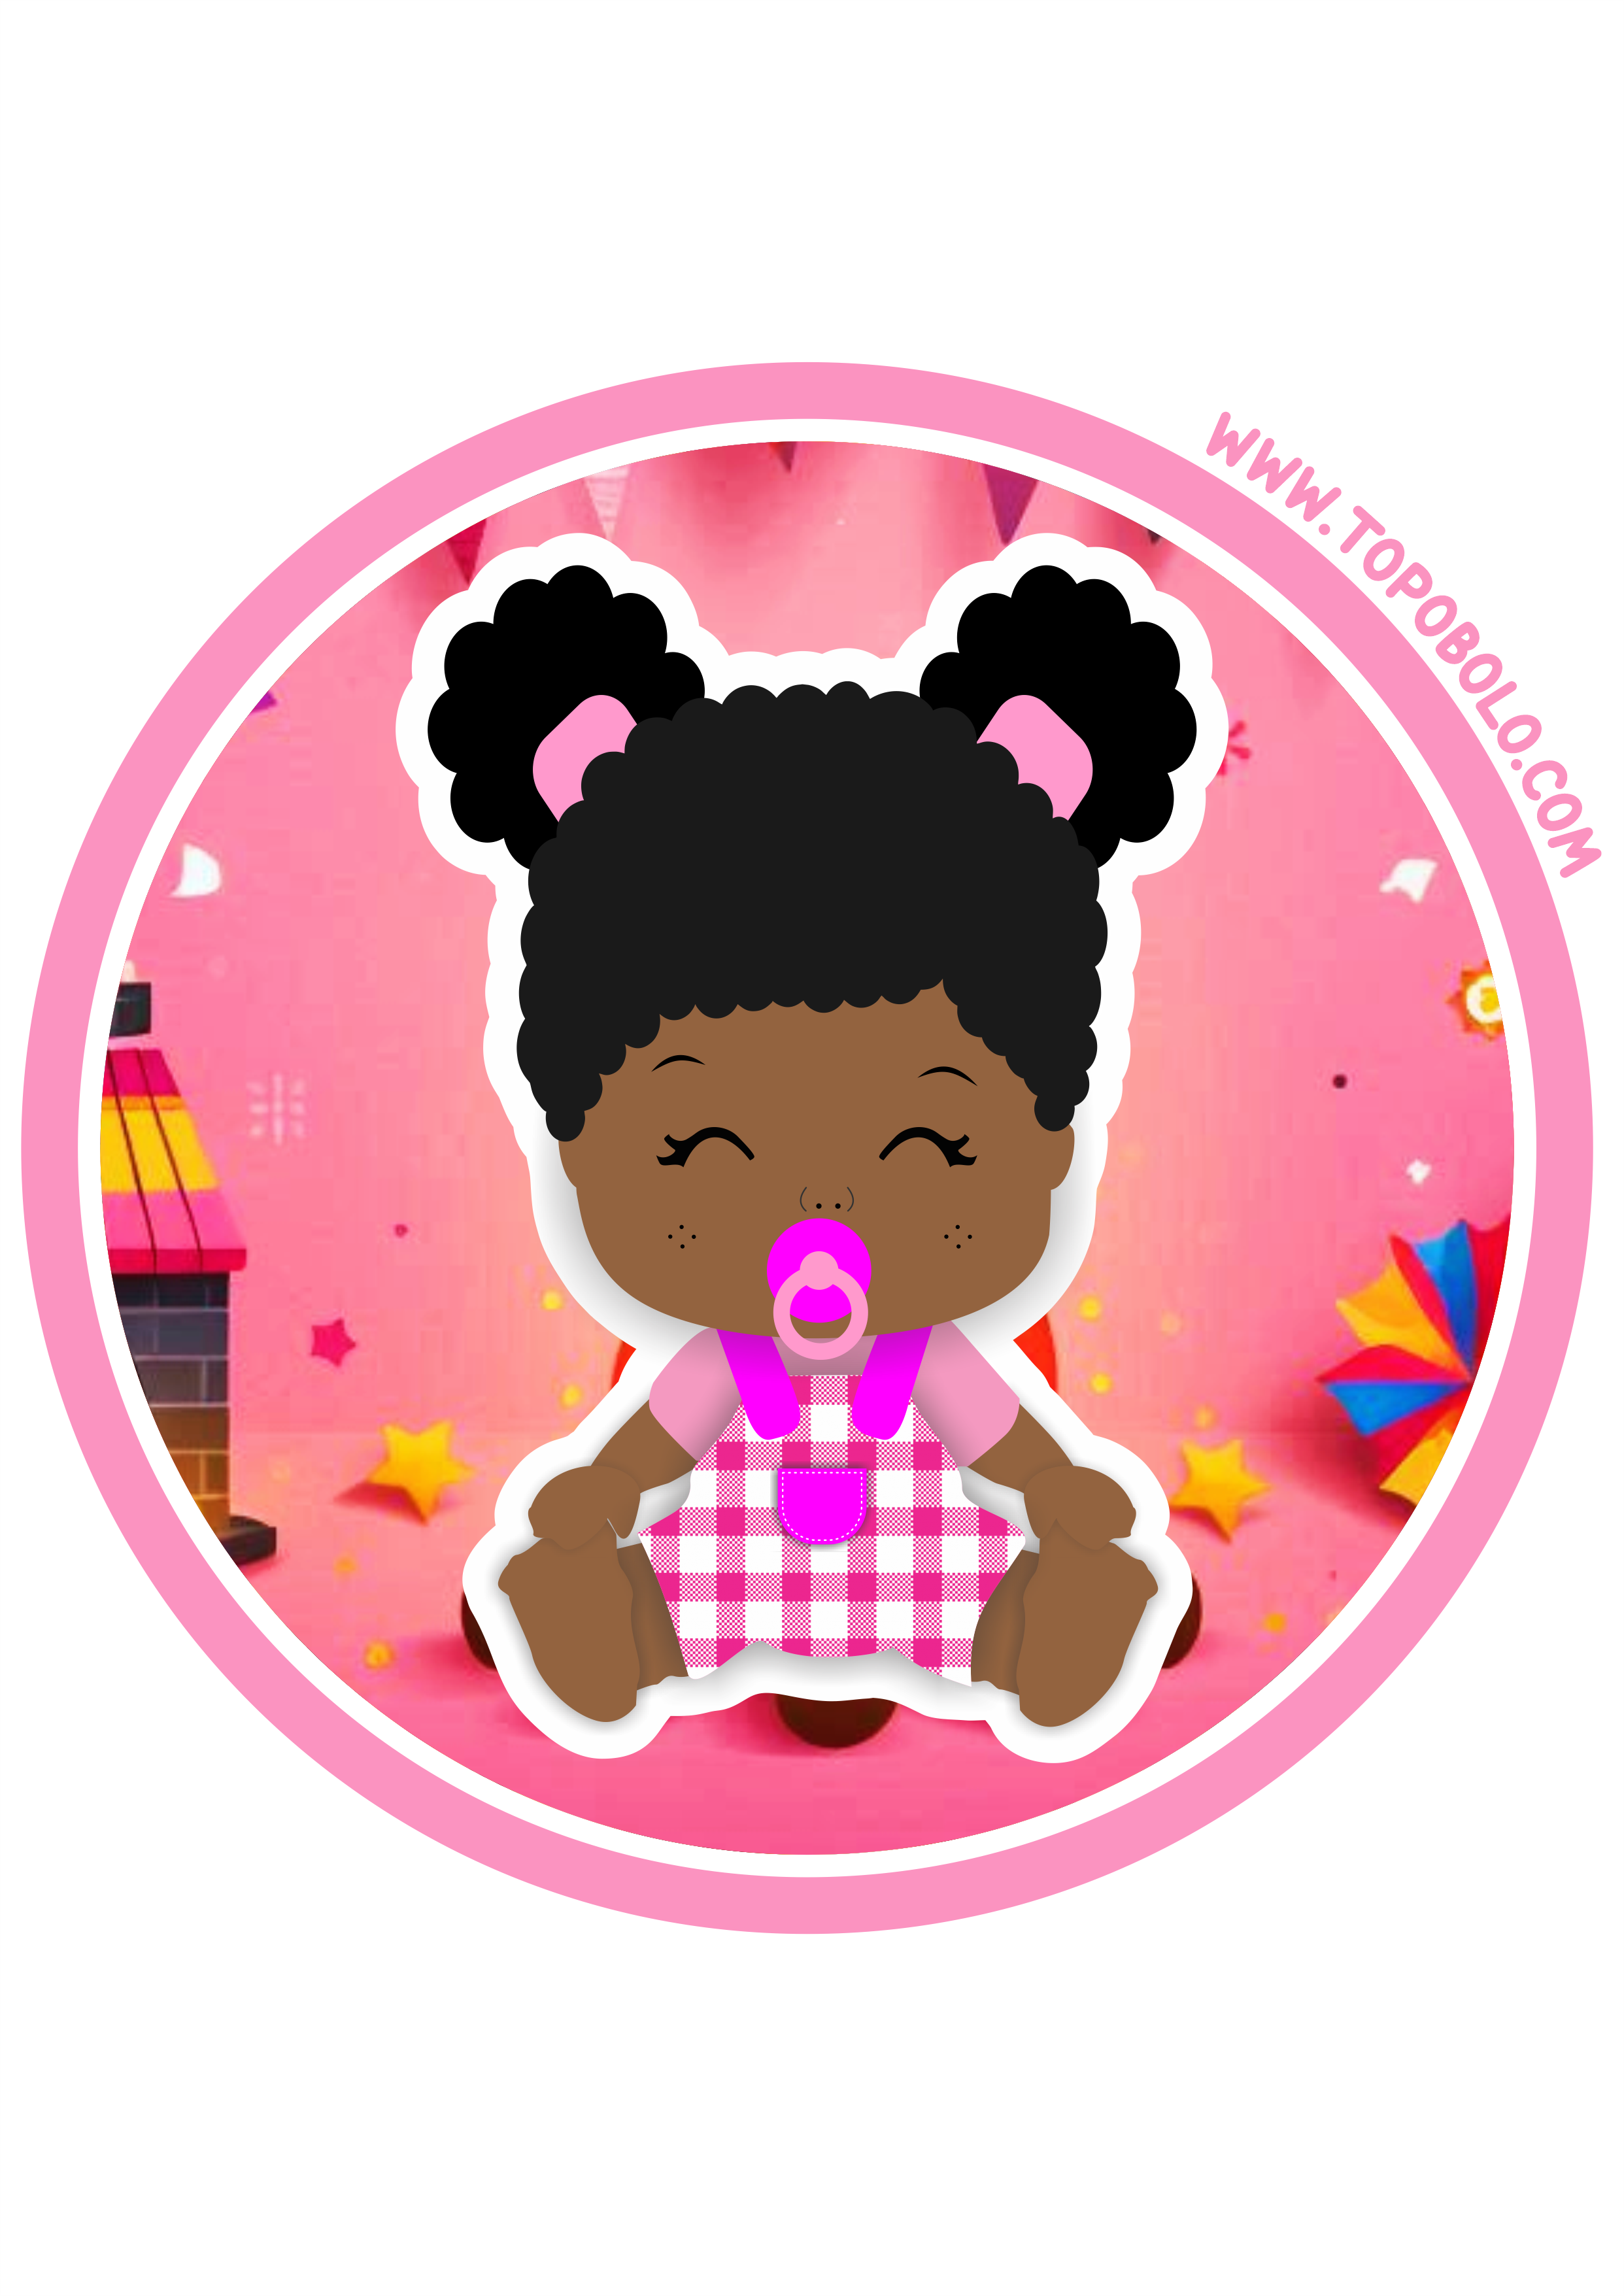 Festa junina adesivo redondo para chá de fralda baby tag sticker arraial rosa festa personalizada png